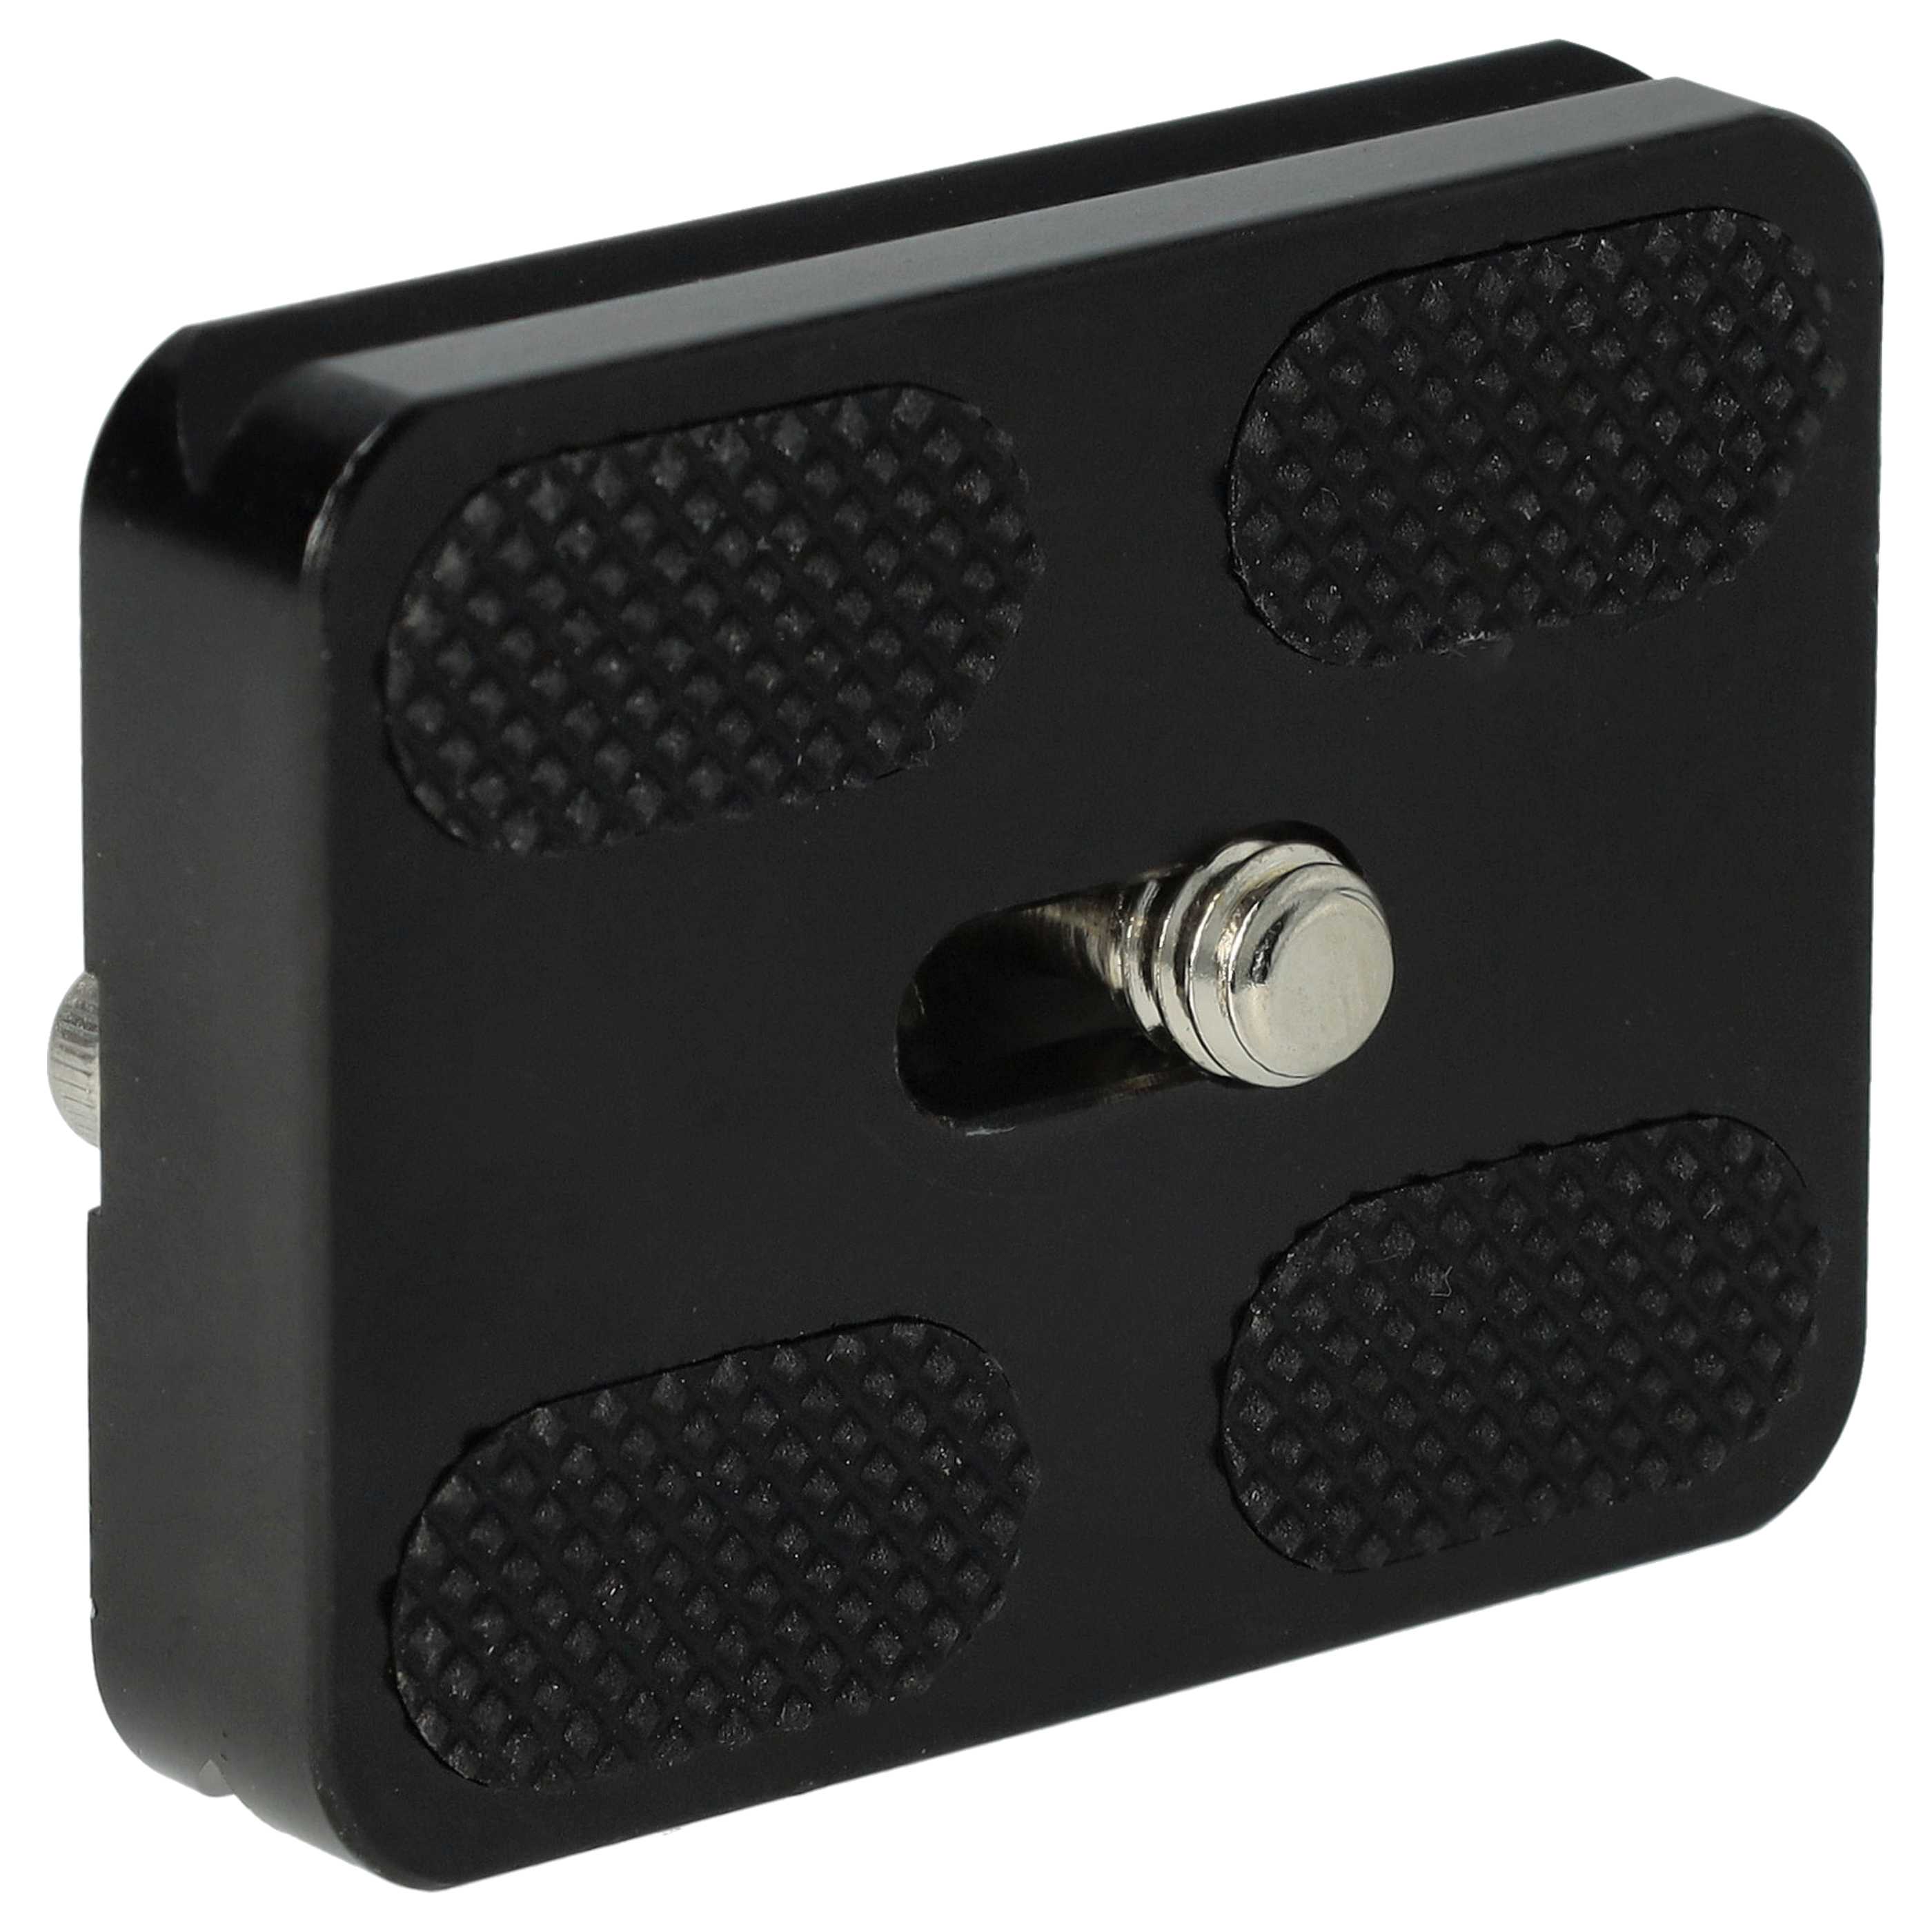 Schnellwechselplatte Kameraplatte Stativplatte PU-50, PU50 für Kamera, DSLR, Digitalkamera, Stativhalterung